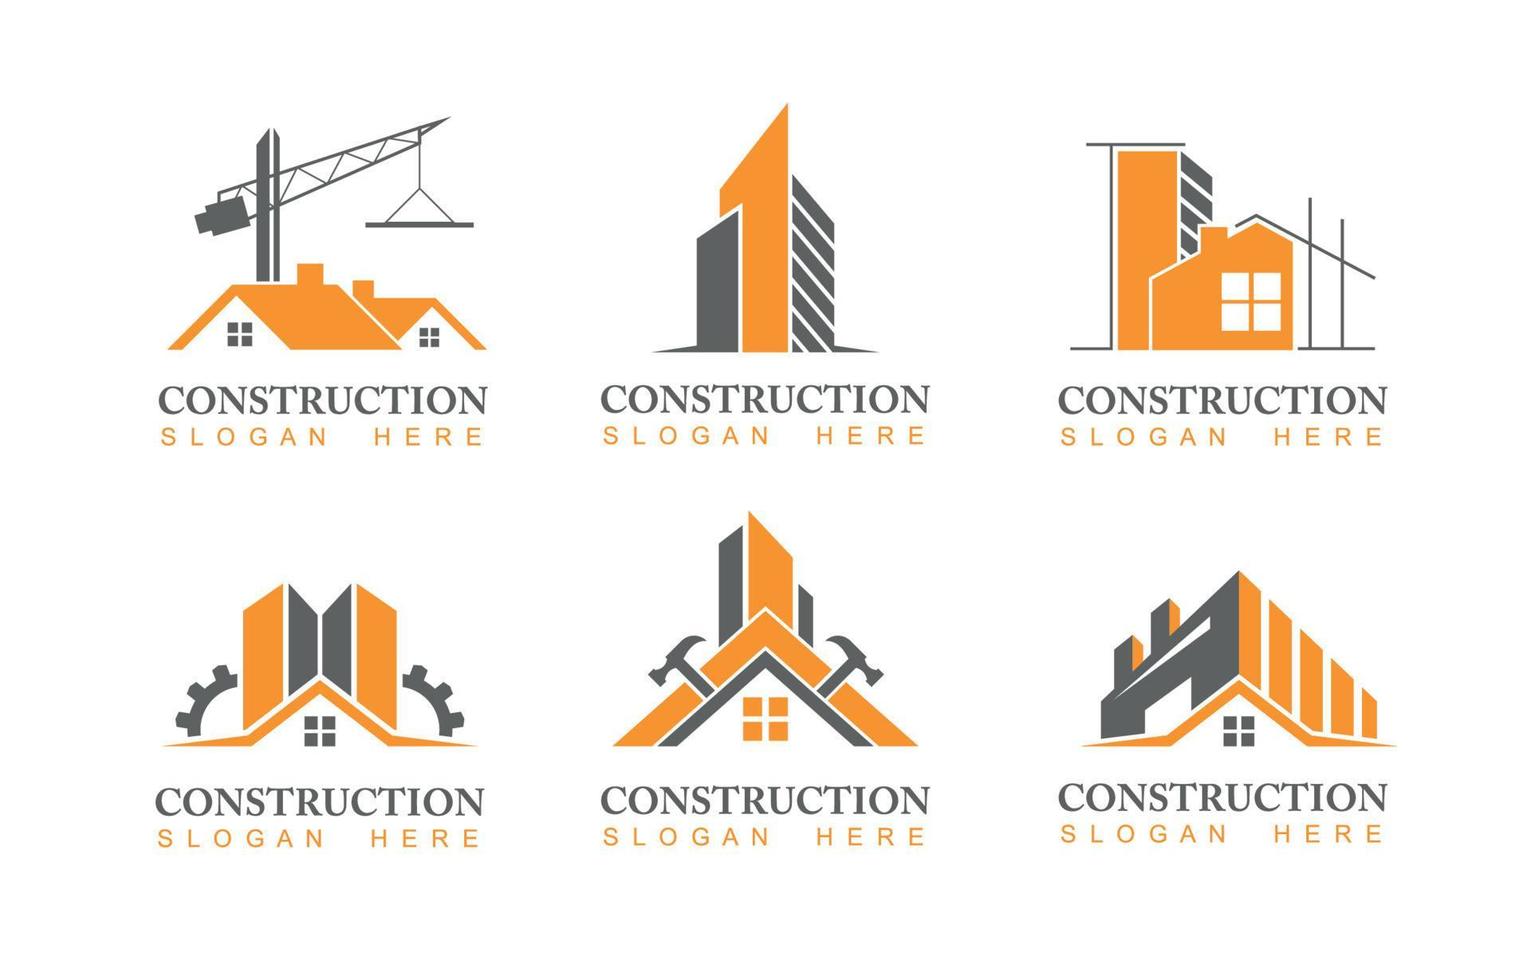 logotipo da construção civil vetor